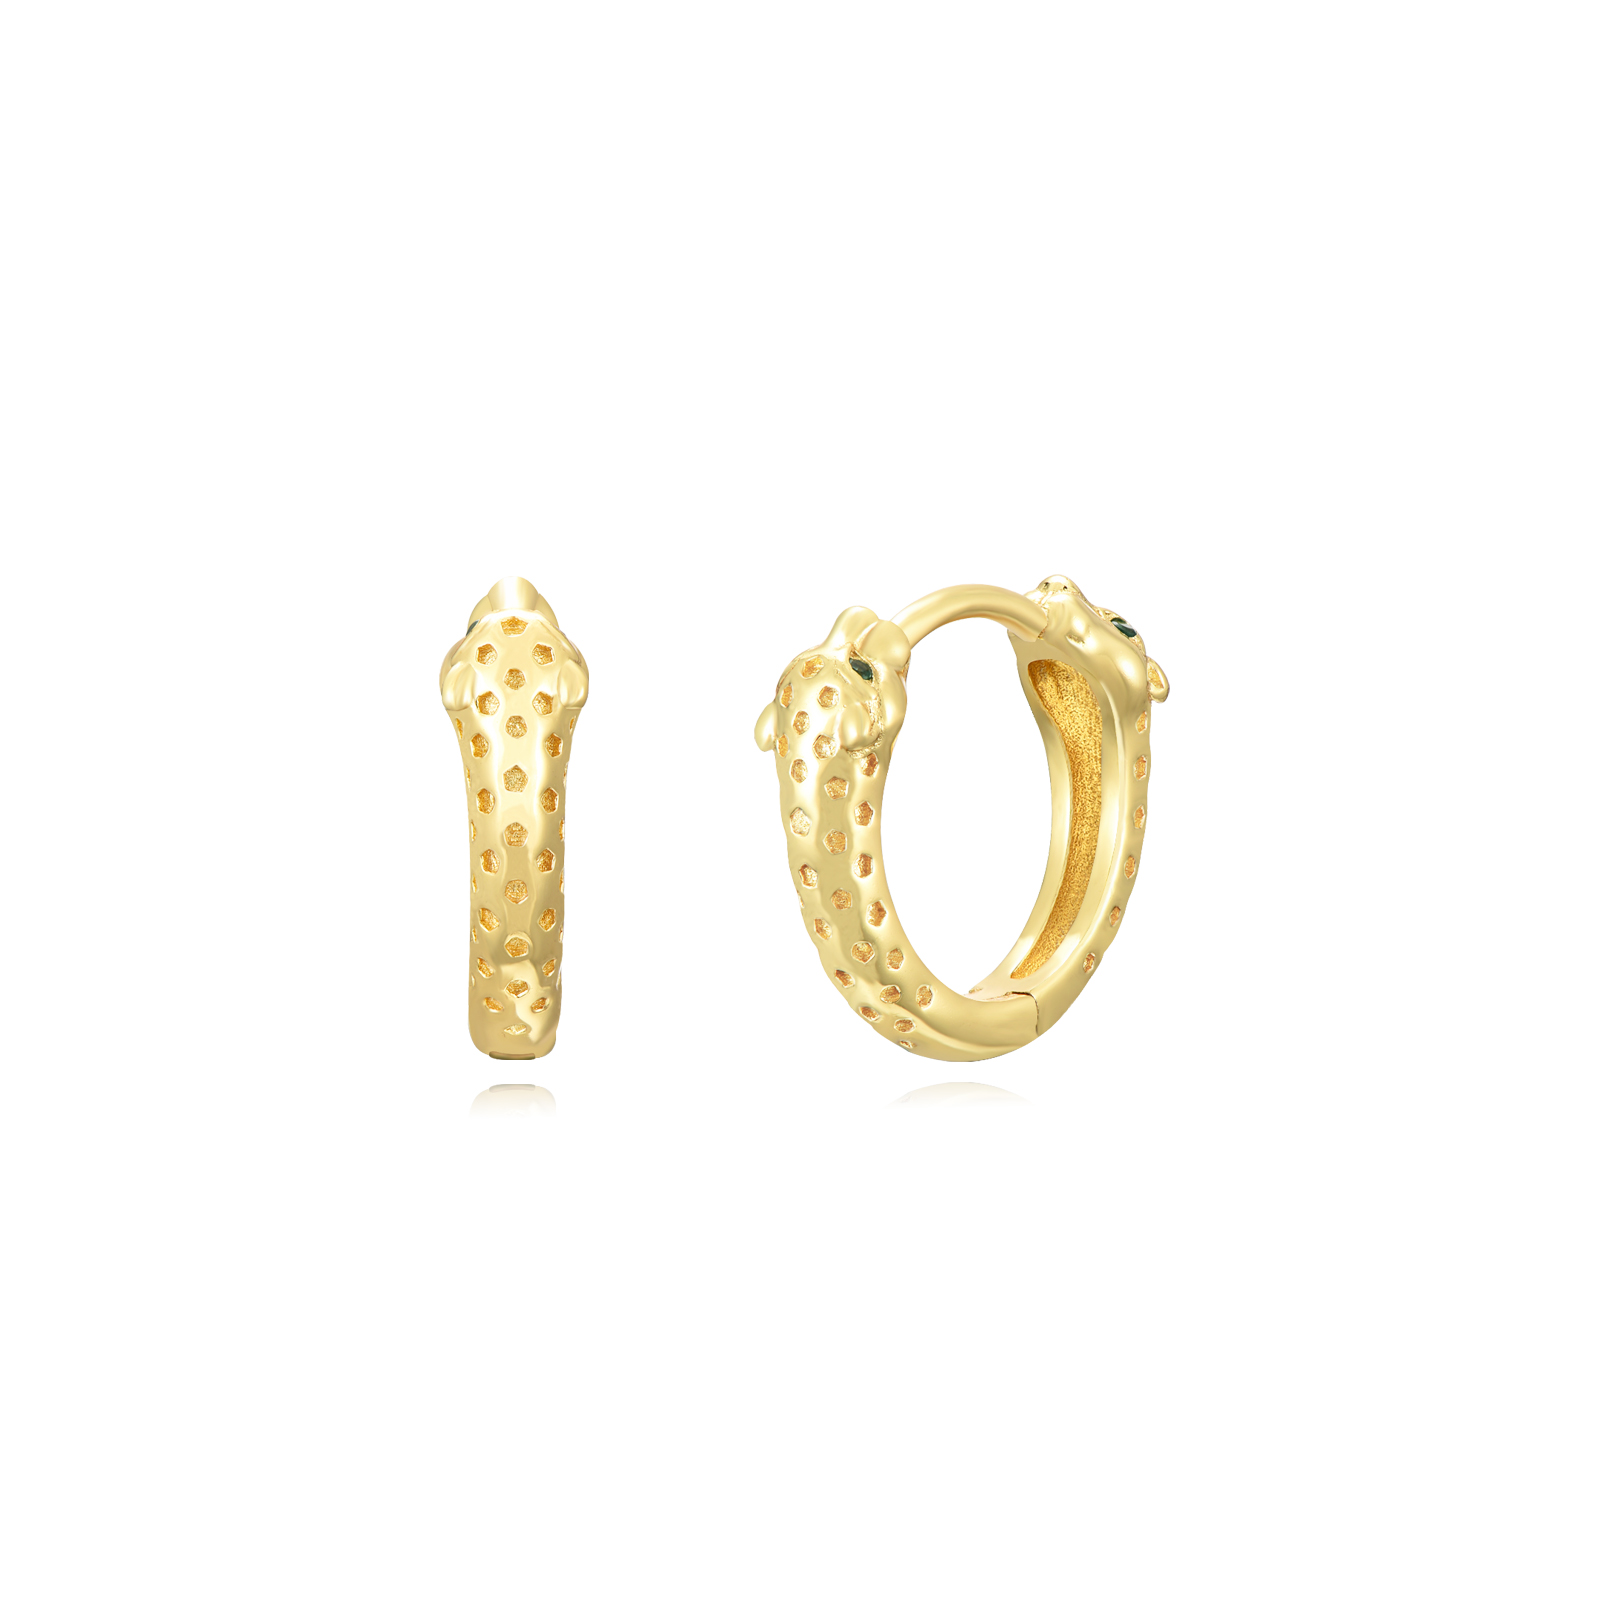 Silver Zircon Earrings Snake Hoop Earrings - Zirconia - 14mm - Gold Plated